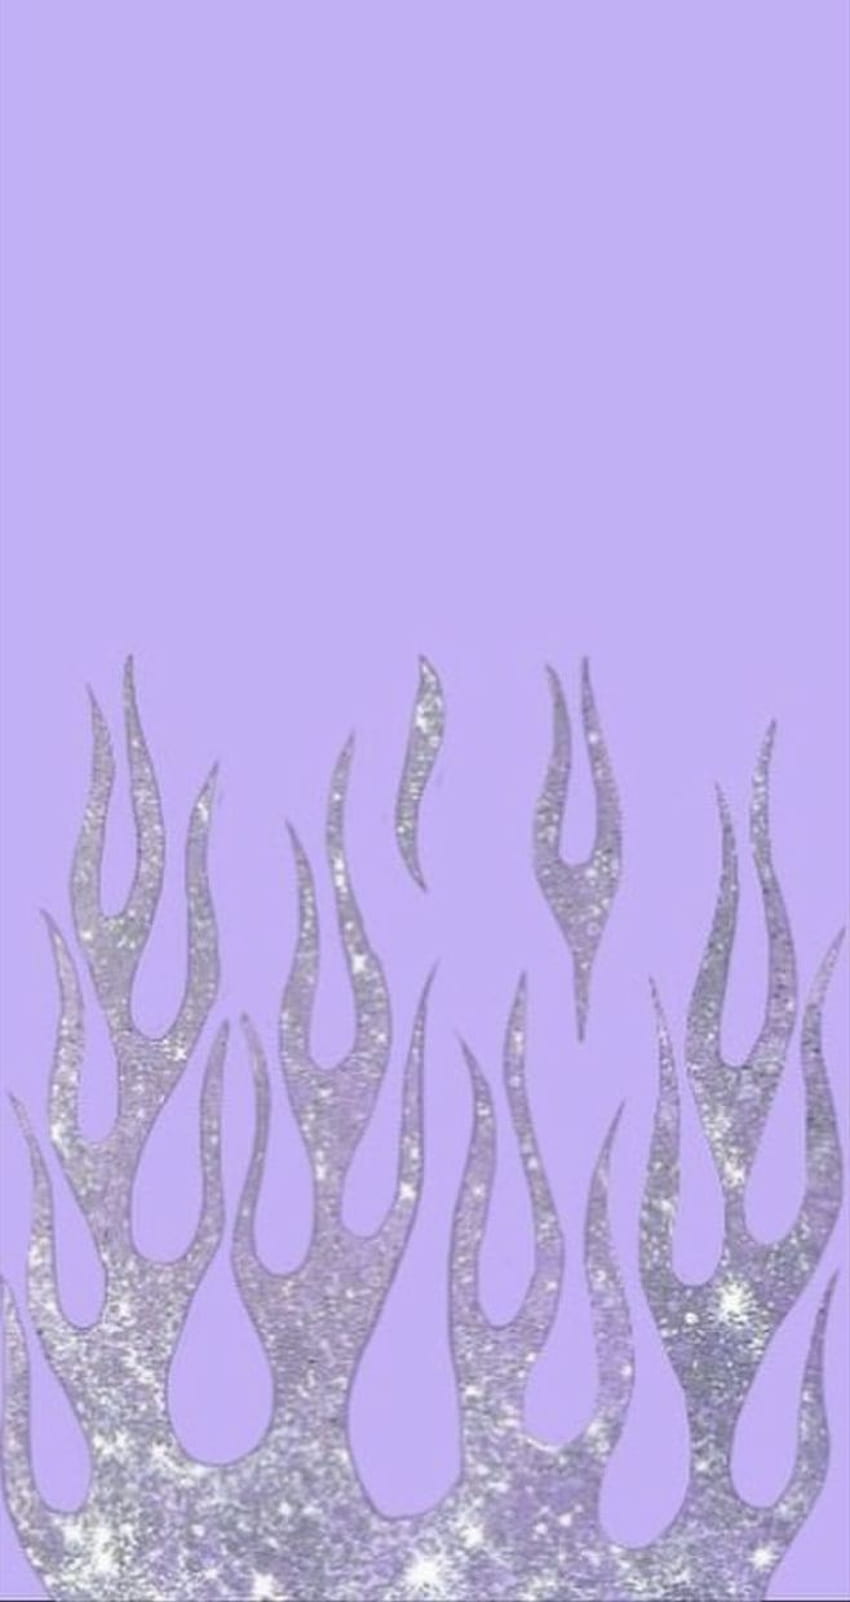 Bạn muốn có những hình nền chất lượng cao và độ phân giải tốt? Hãy tìm đến bộ sưu tập purple baddie HD wallpapers để tận hưởng vẻ đẹp của những hình ảnh đầy sự quyến rũ và bí ẩn.